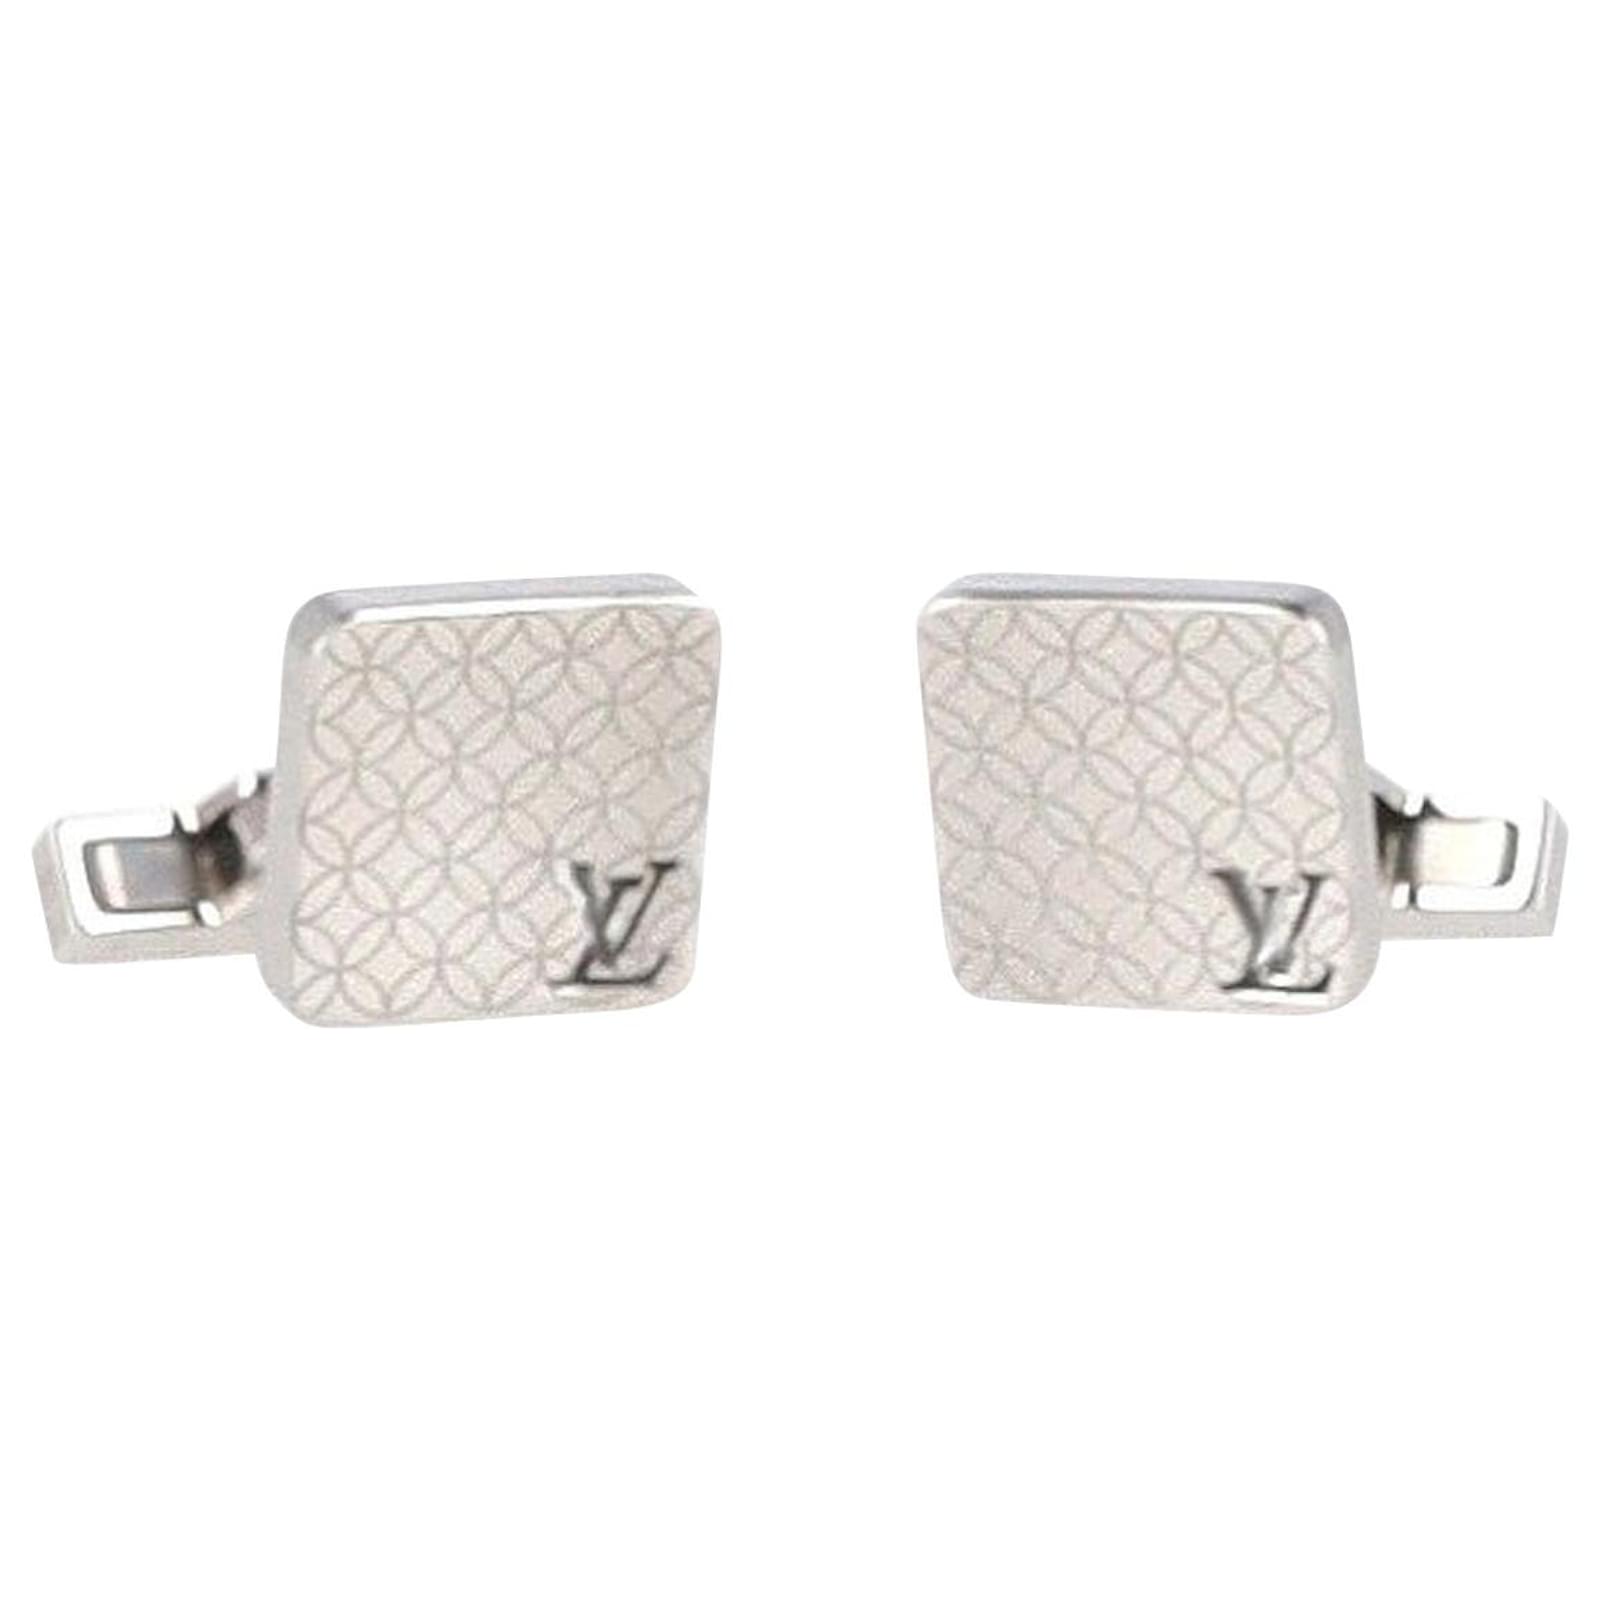 Second hand Louis Vuitton Cufflinks - Joli Closet